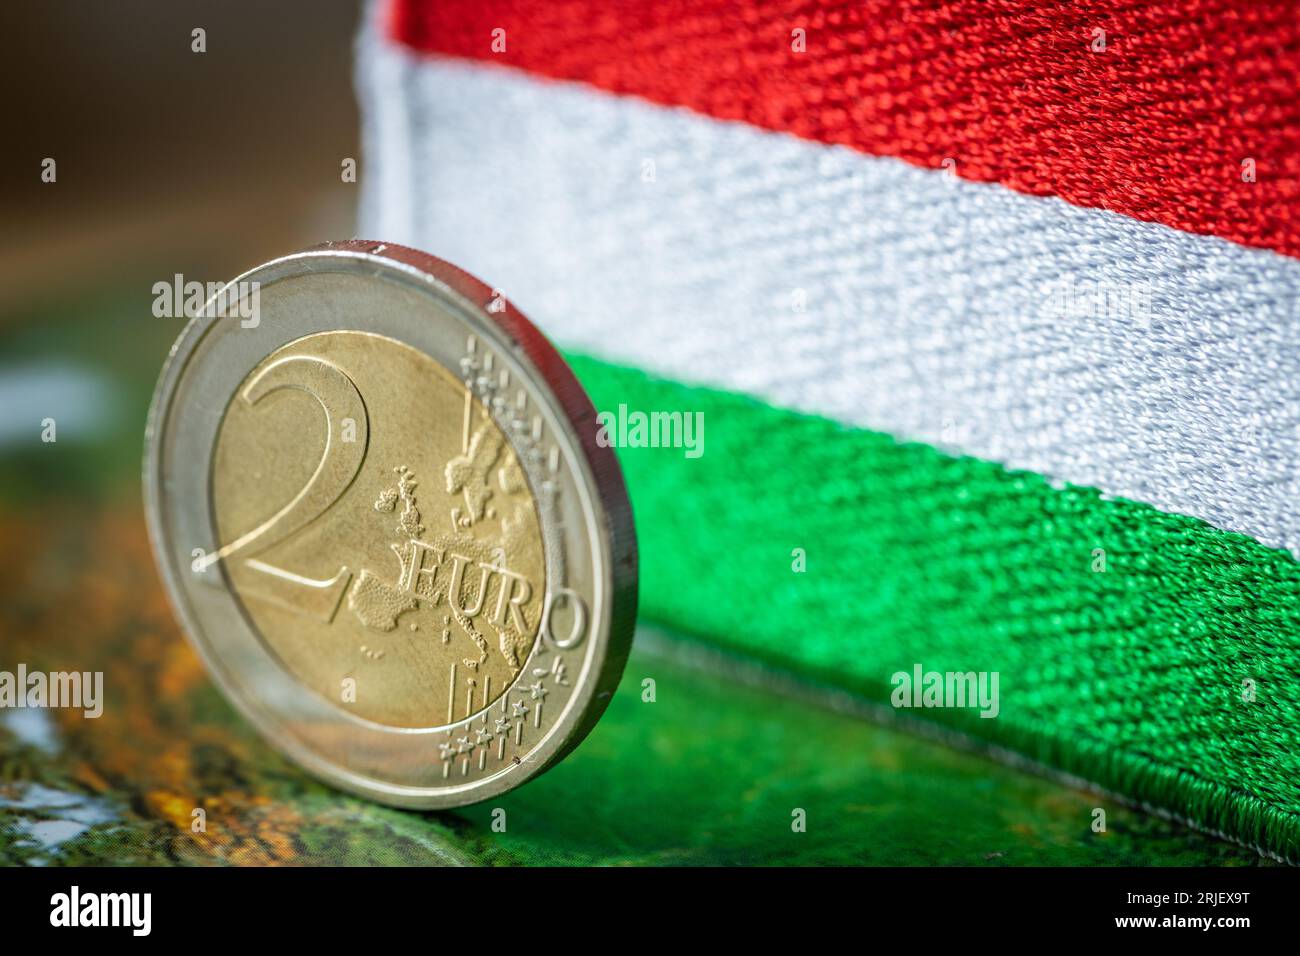 Entrée de la Hongrie dans la zone euro, concept, business et monnaie unique européenne, remplacement du forint hongrois par l'euro Banque D'Images